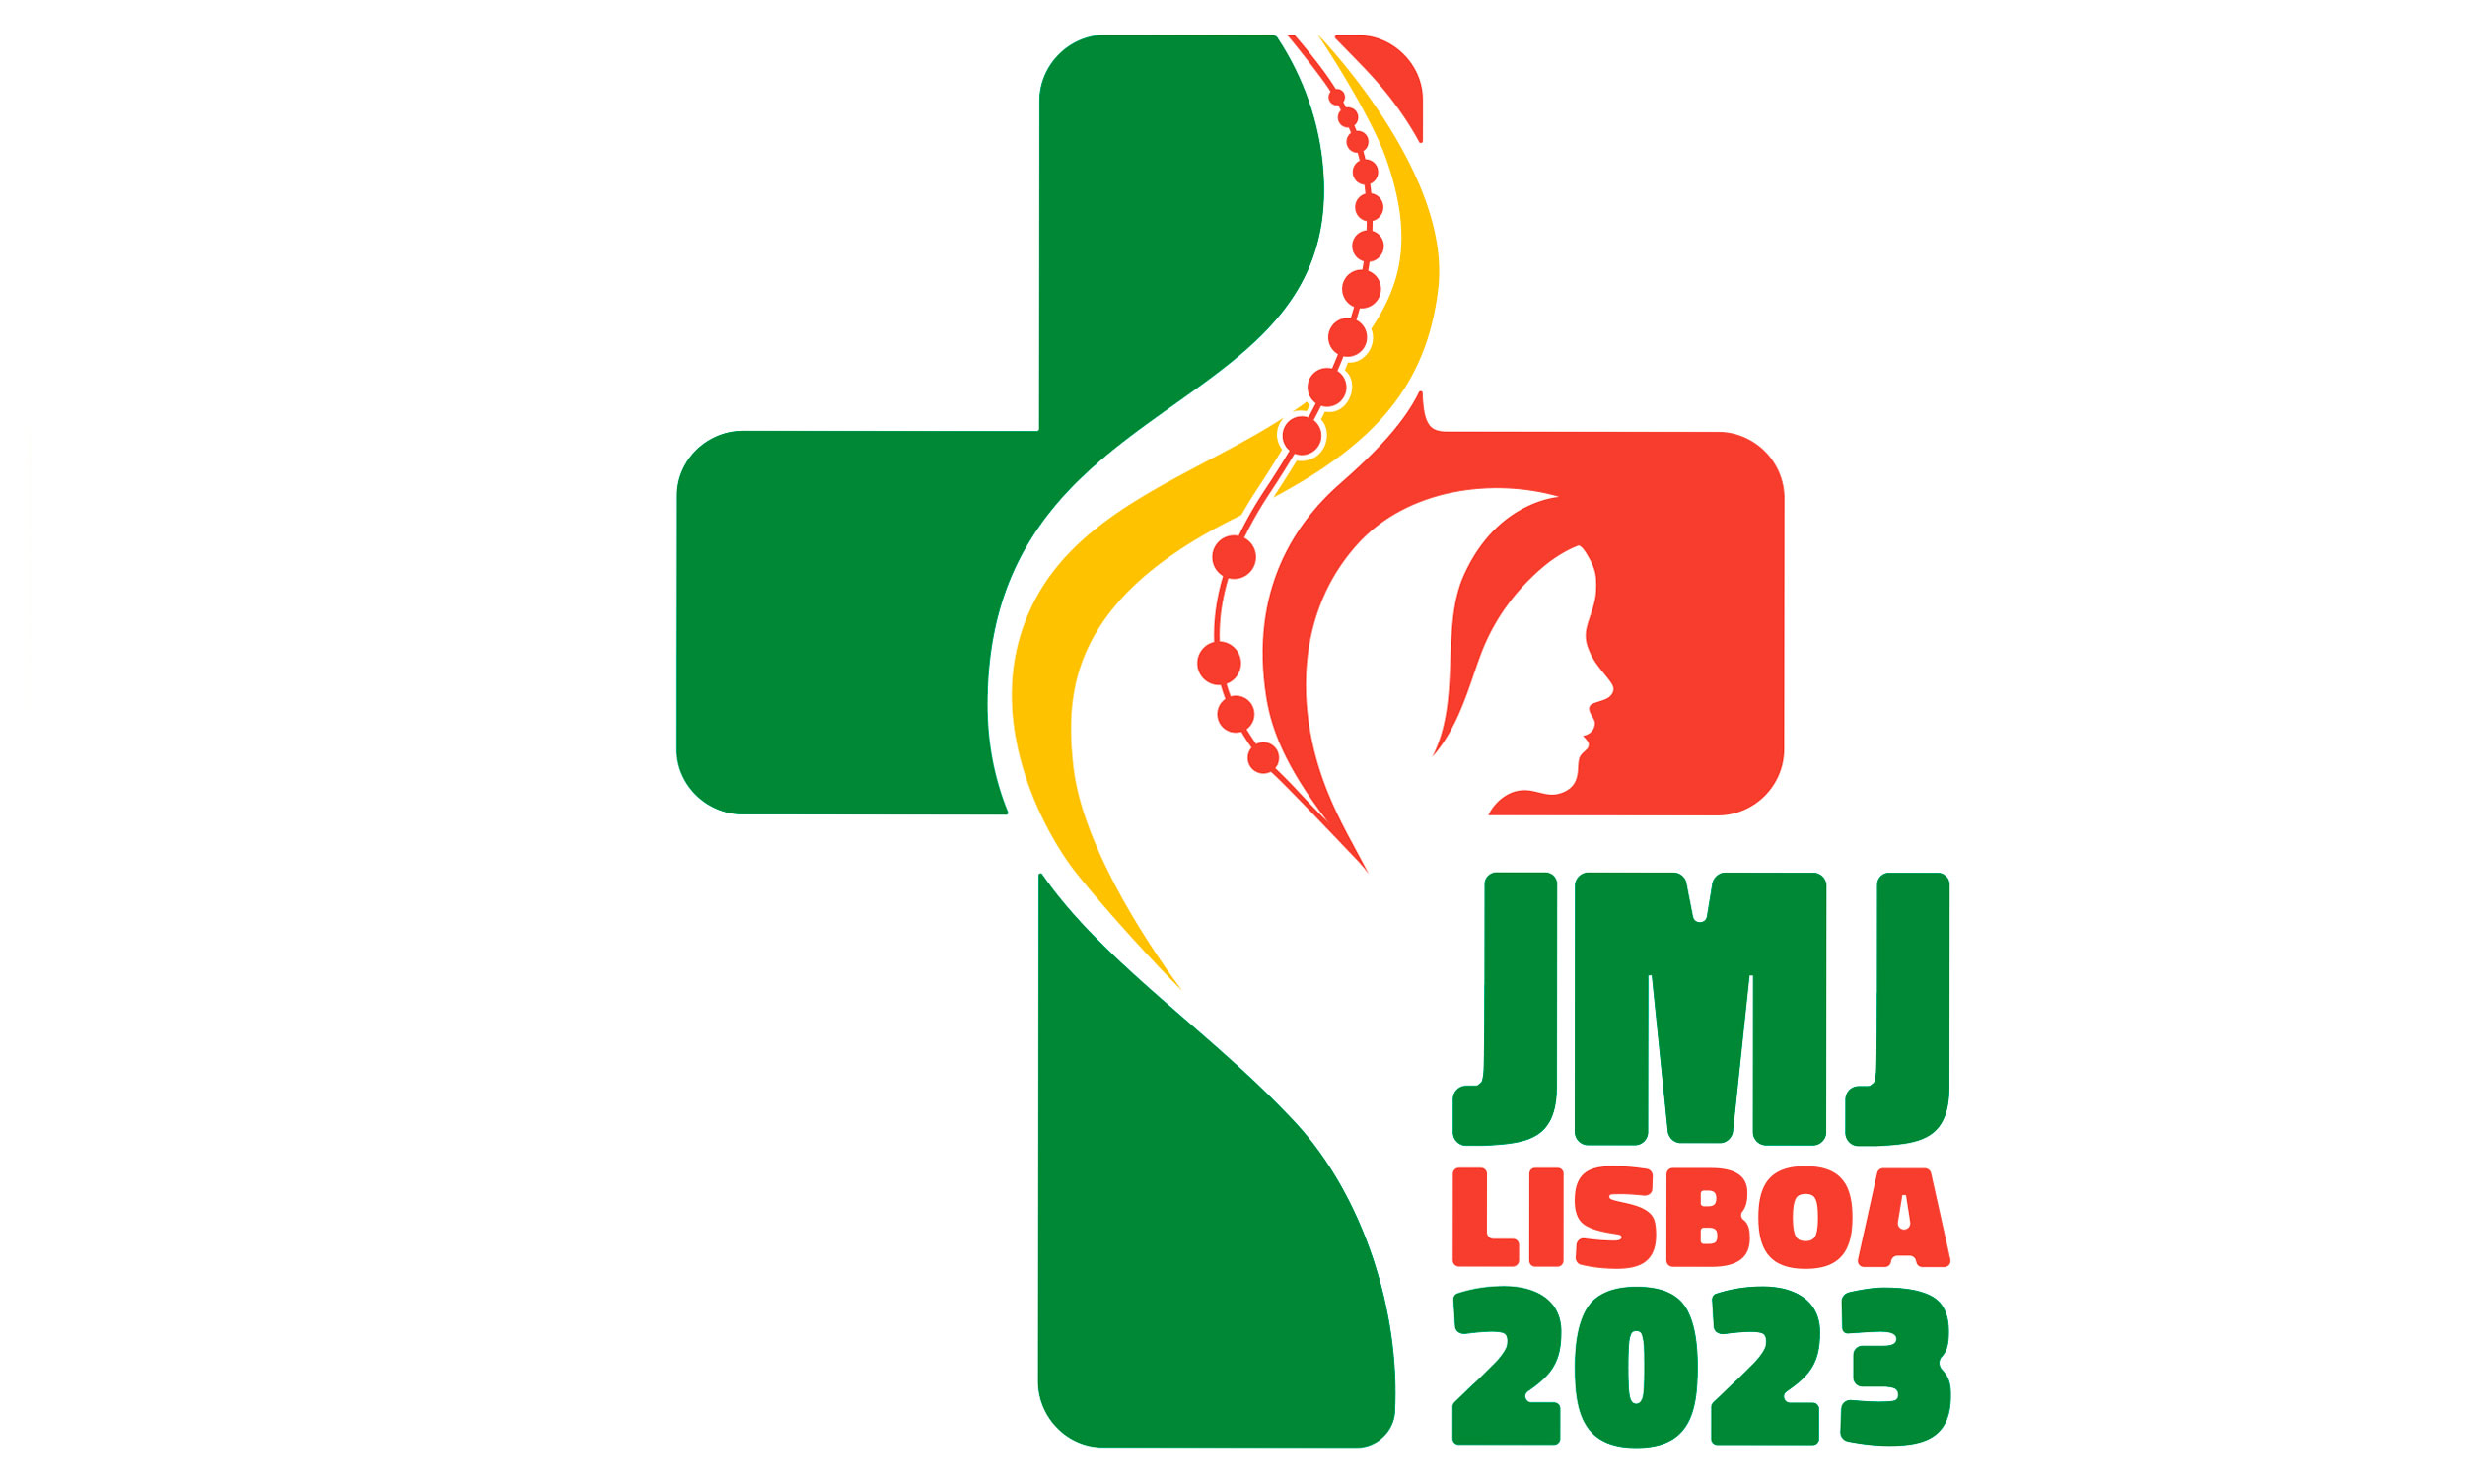 Папа пригласил молодёжь на ВДМ-2023 в Лиссабон (ВИДЕО)